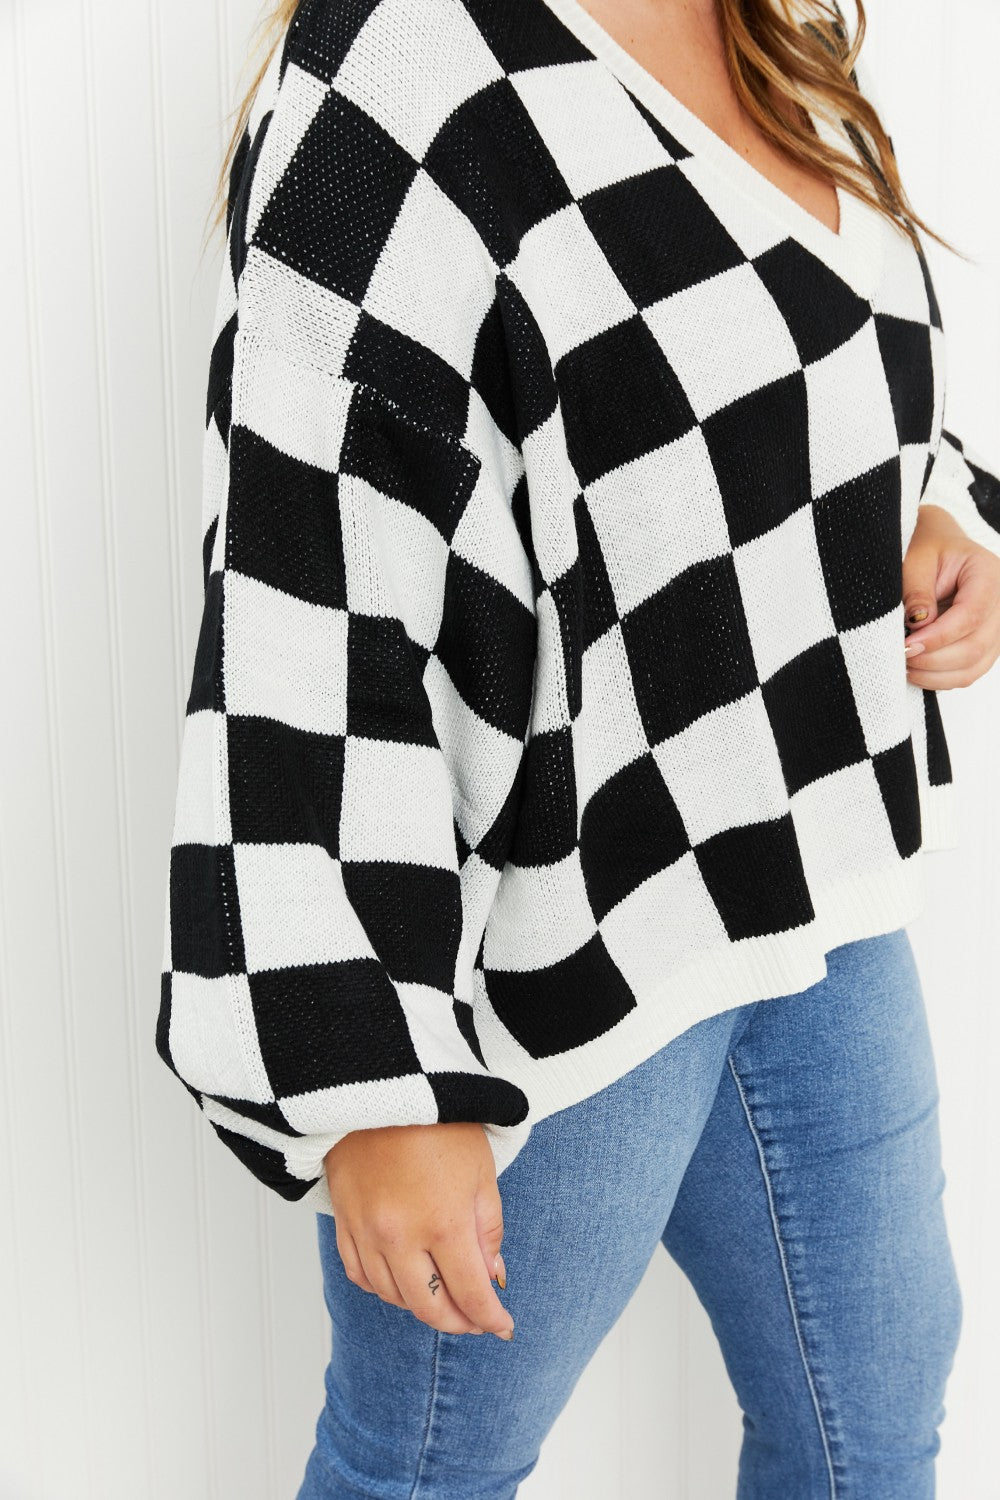 Davi & Dani Reality Check Full Size Checkered V-Neck Sweater